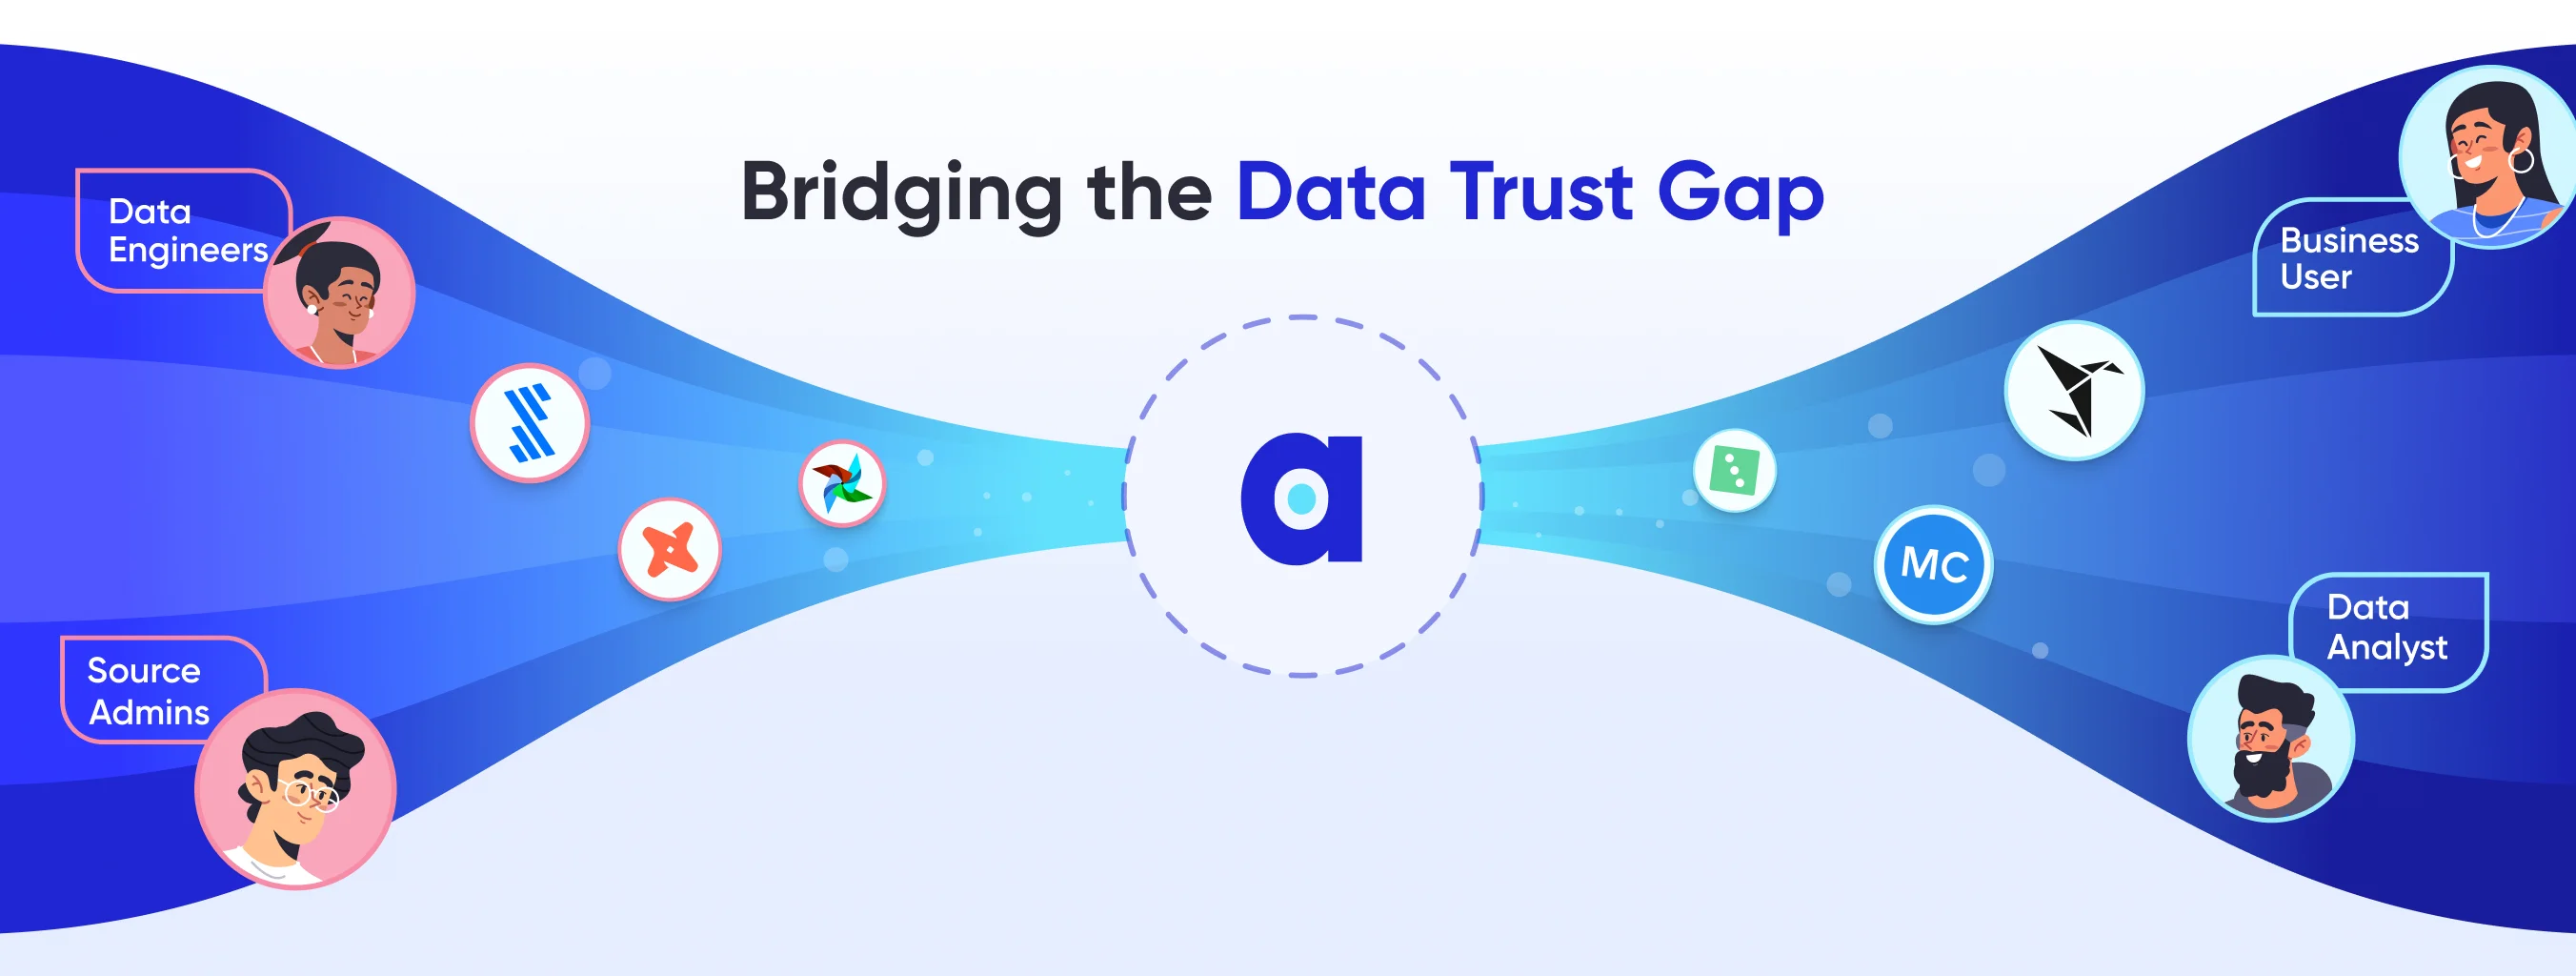 Bridging the Data Trust Gap